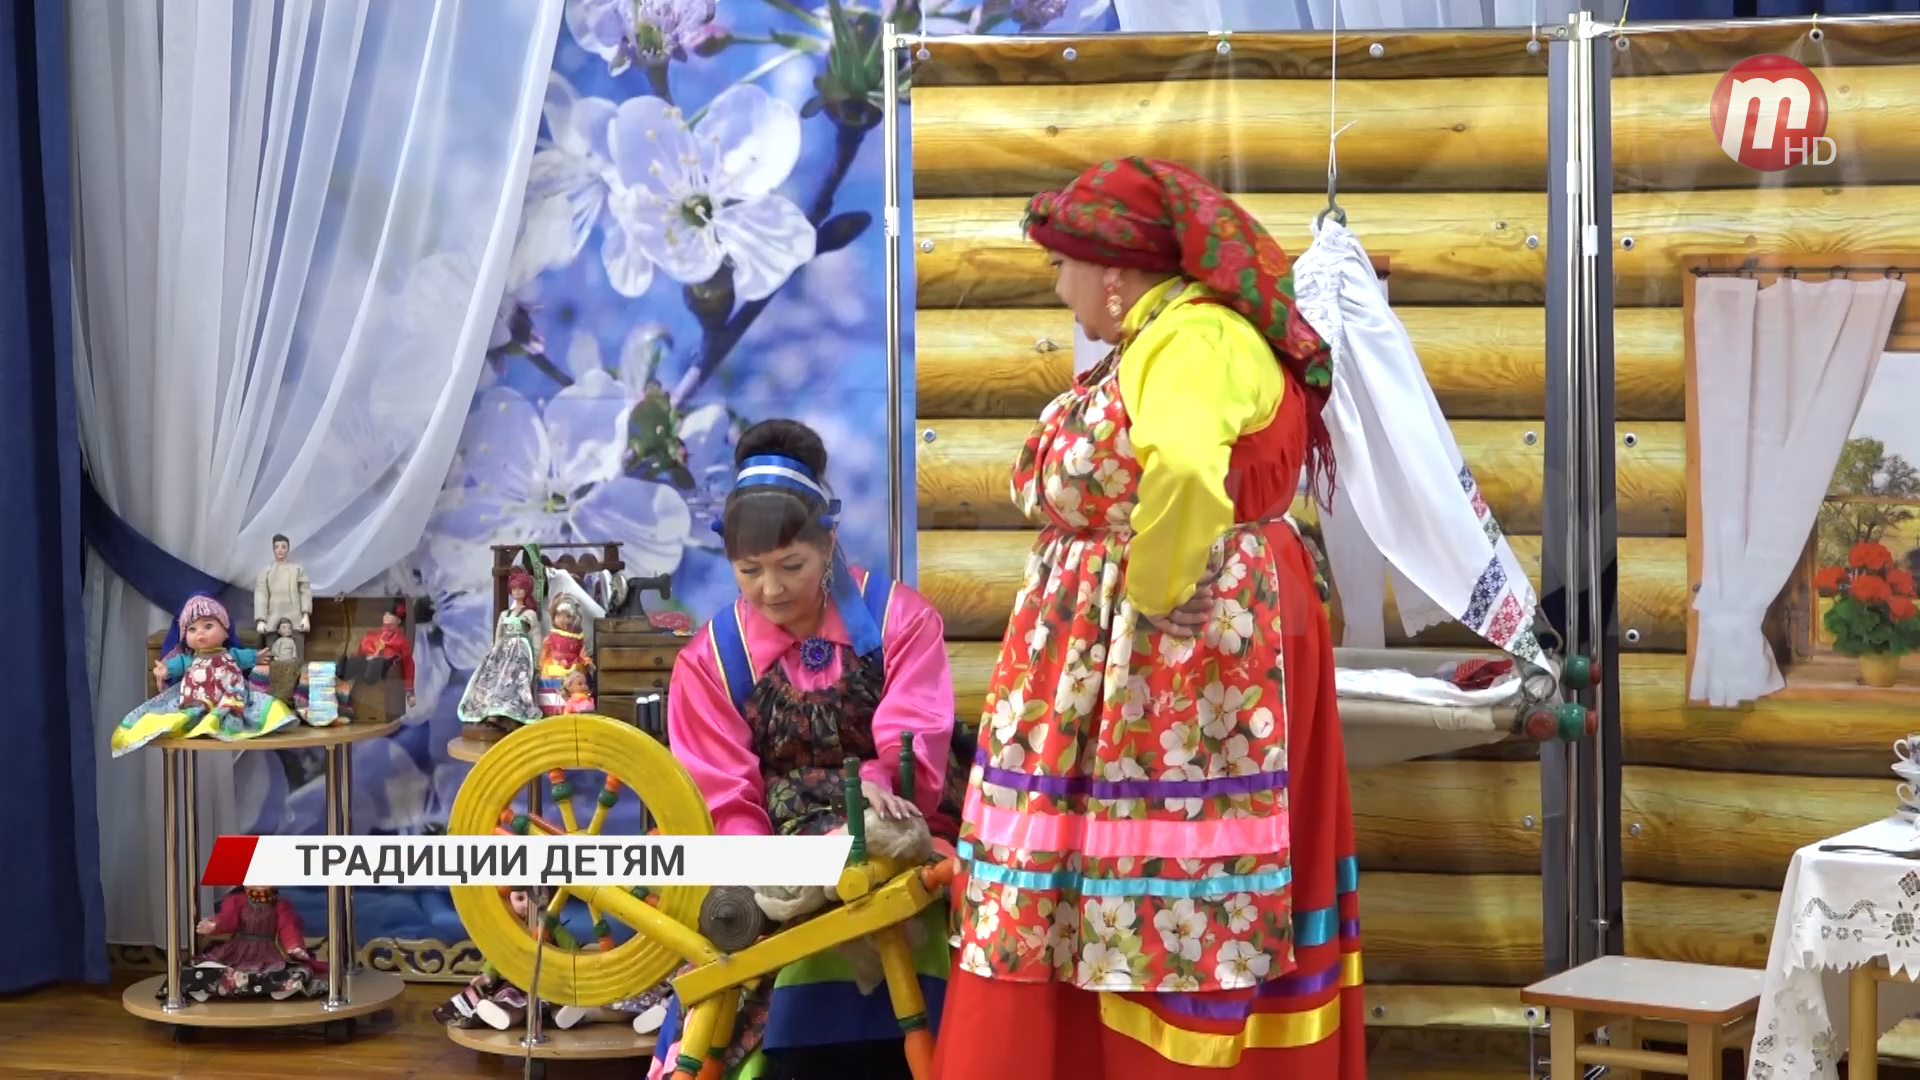 "Семейский" детсад. В Улан-Удэ малыши изучают культуру старообрядцев